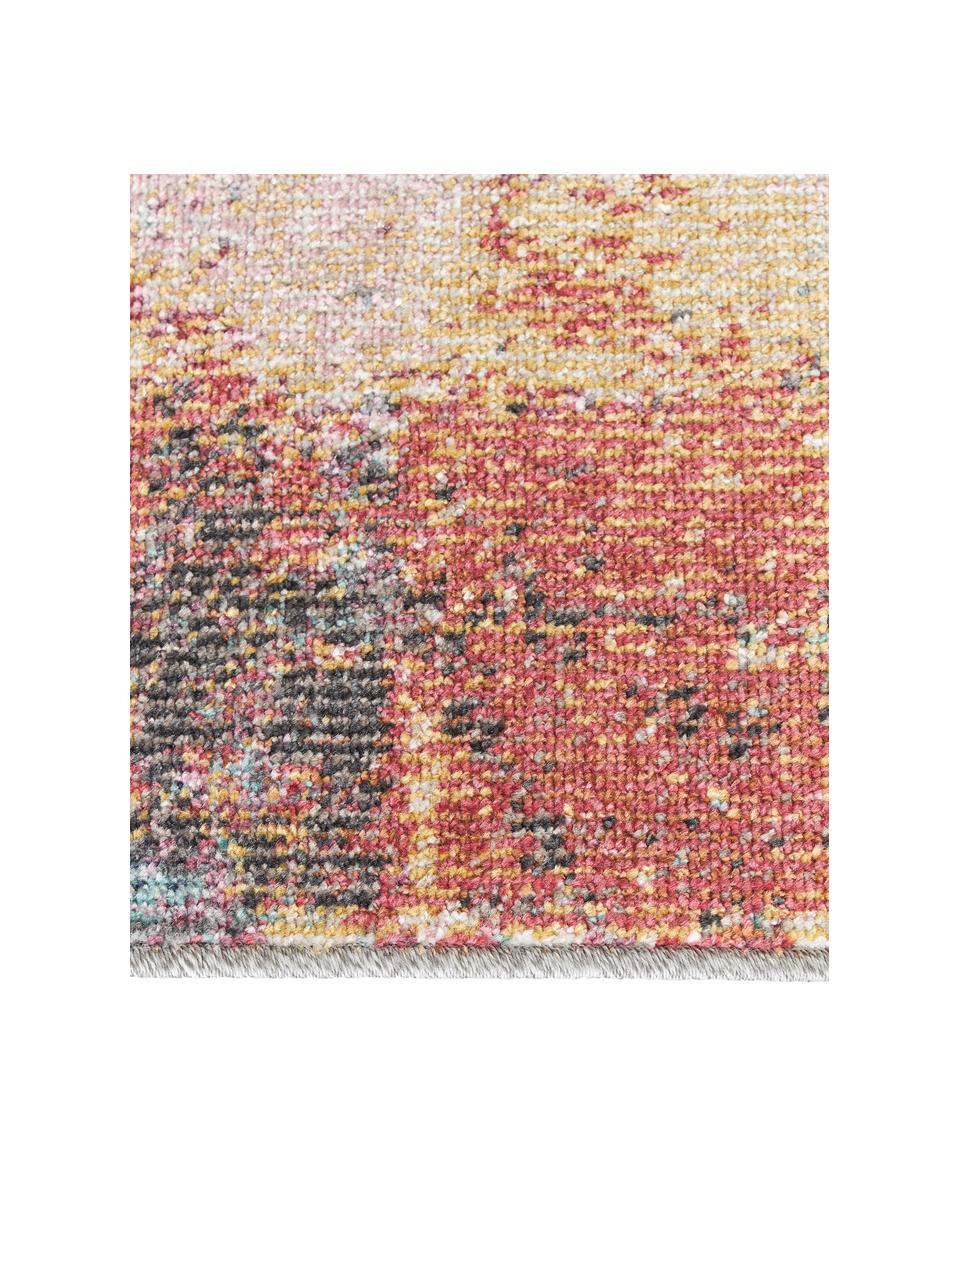 Interiérový/exteriérový koberec s barevným přechodem Paris, 100 % polypropylen

Materiál použitý v tomto produktu byl testován na škodlivé látky a certifikován podle STANDARD 100 od OEKO-TEX®, 21.HTR.82511, Hohenstein HTTI., Více barev, Š 80 cm, D 150 cm (velikost XS)